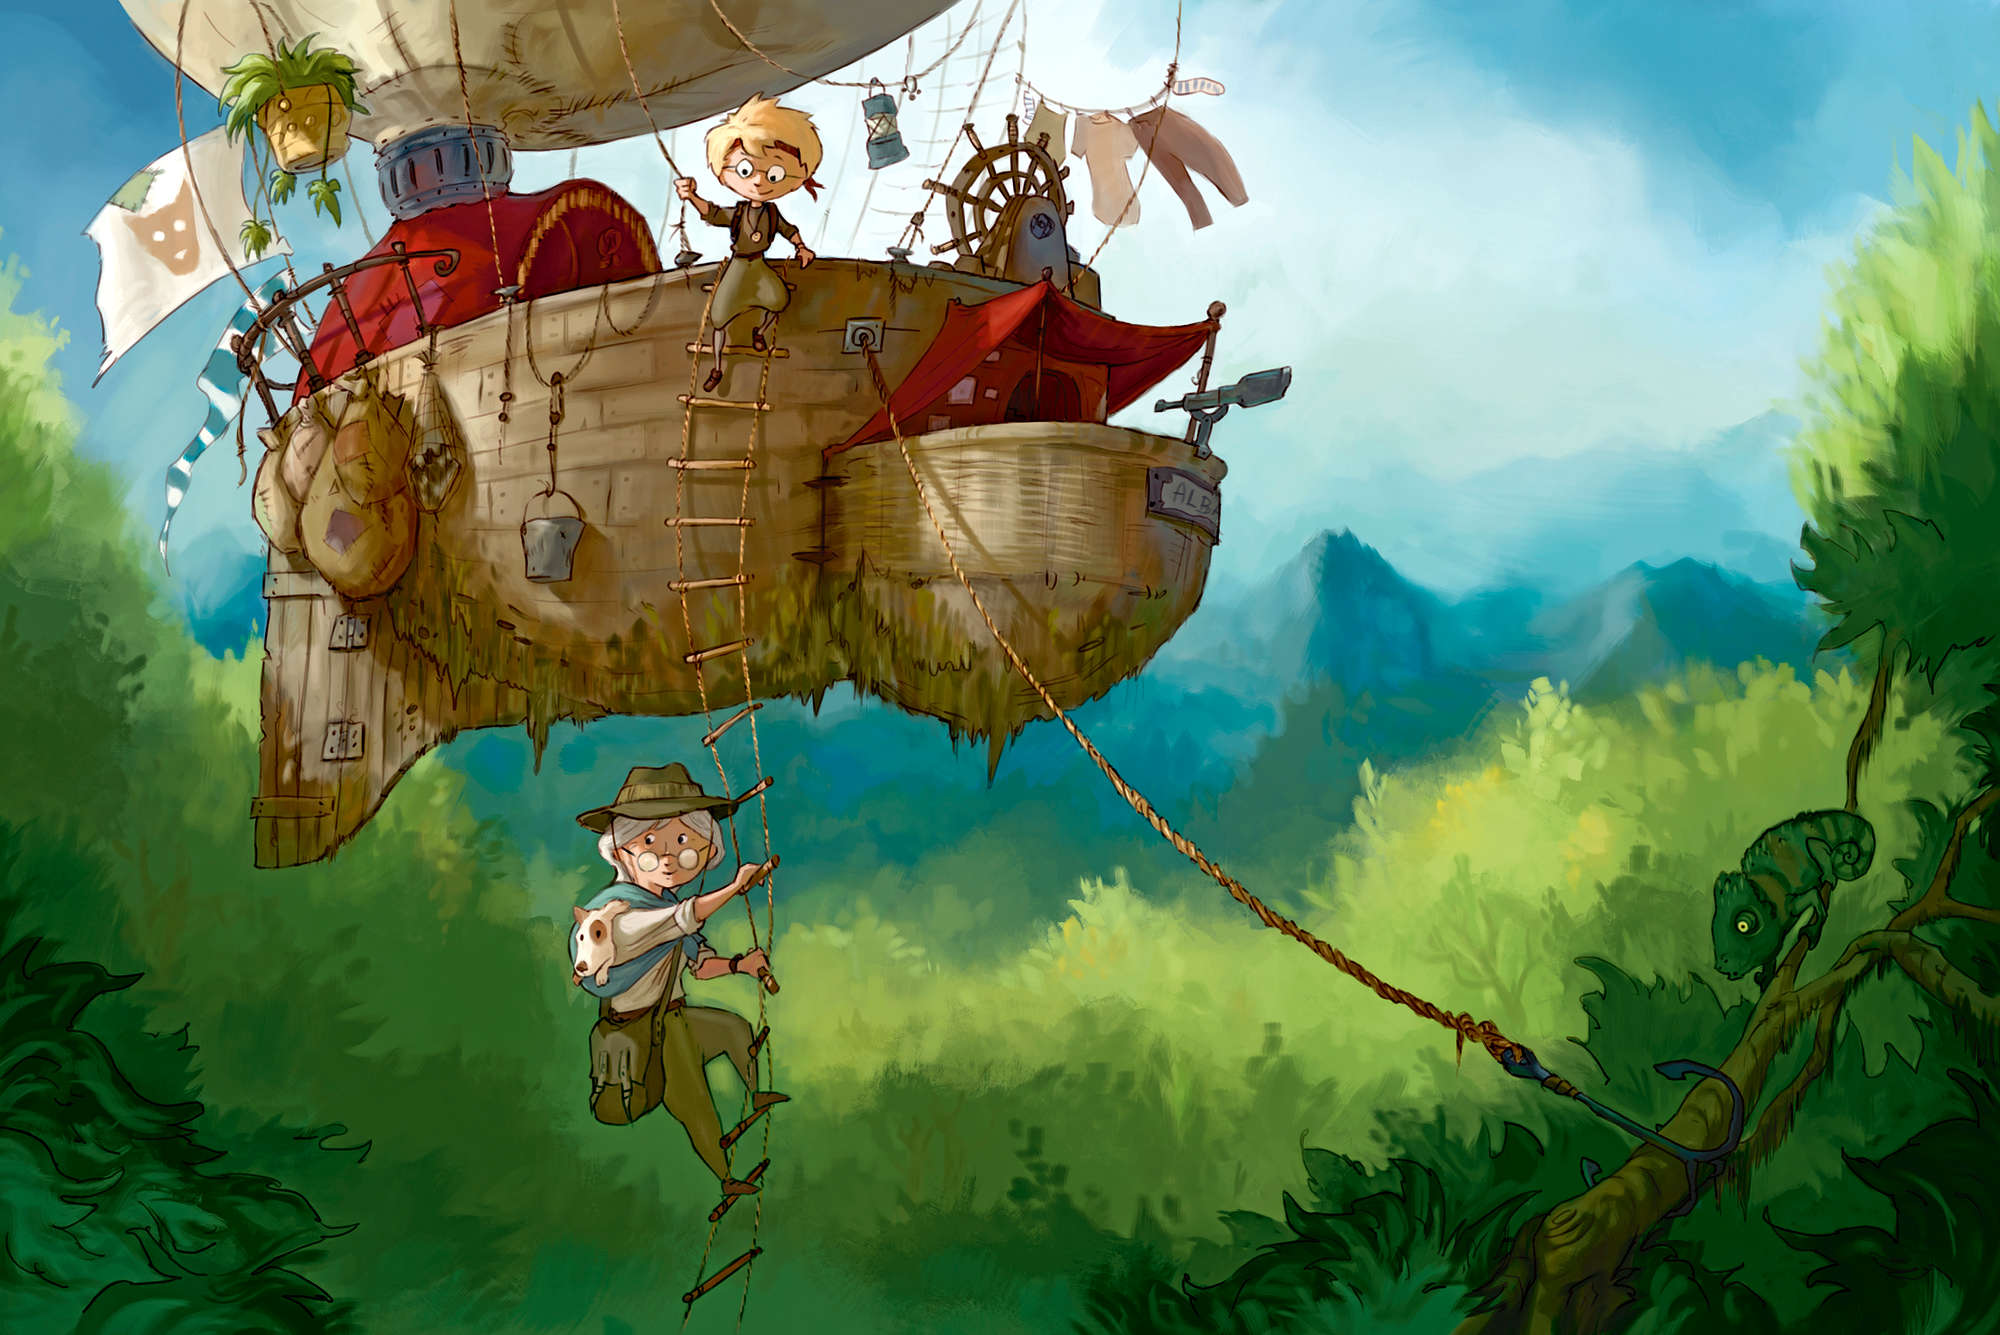             Kinder muurschildering Avonturier met vliegend schip op eersteklas gladde fleece
        